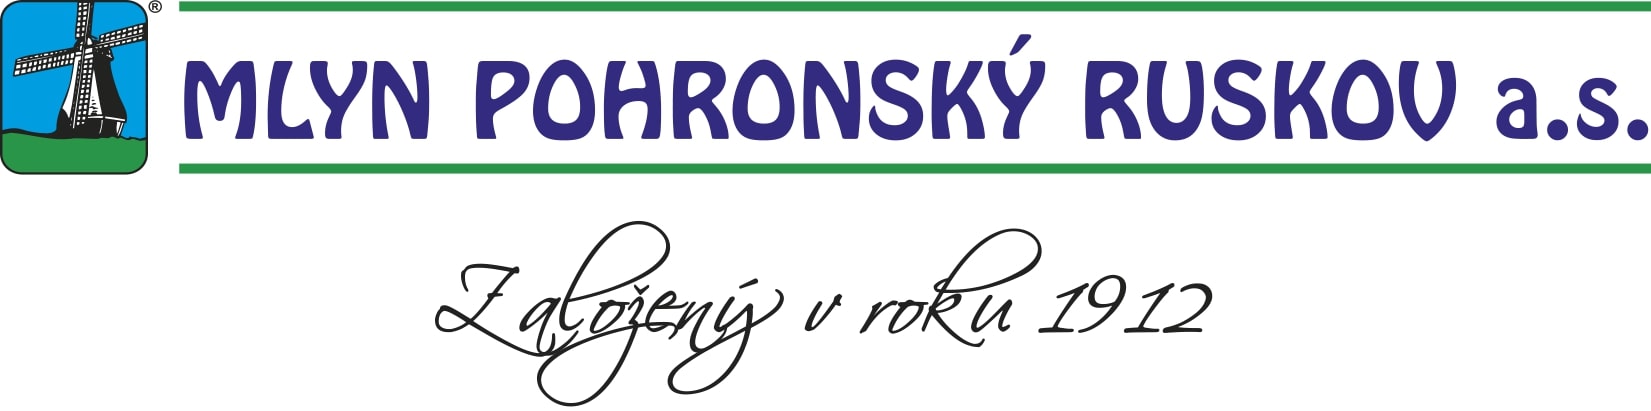 Mlyn Pohronský Ruskov, a.s.